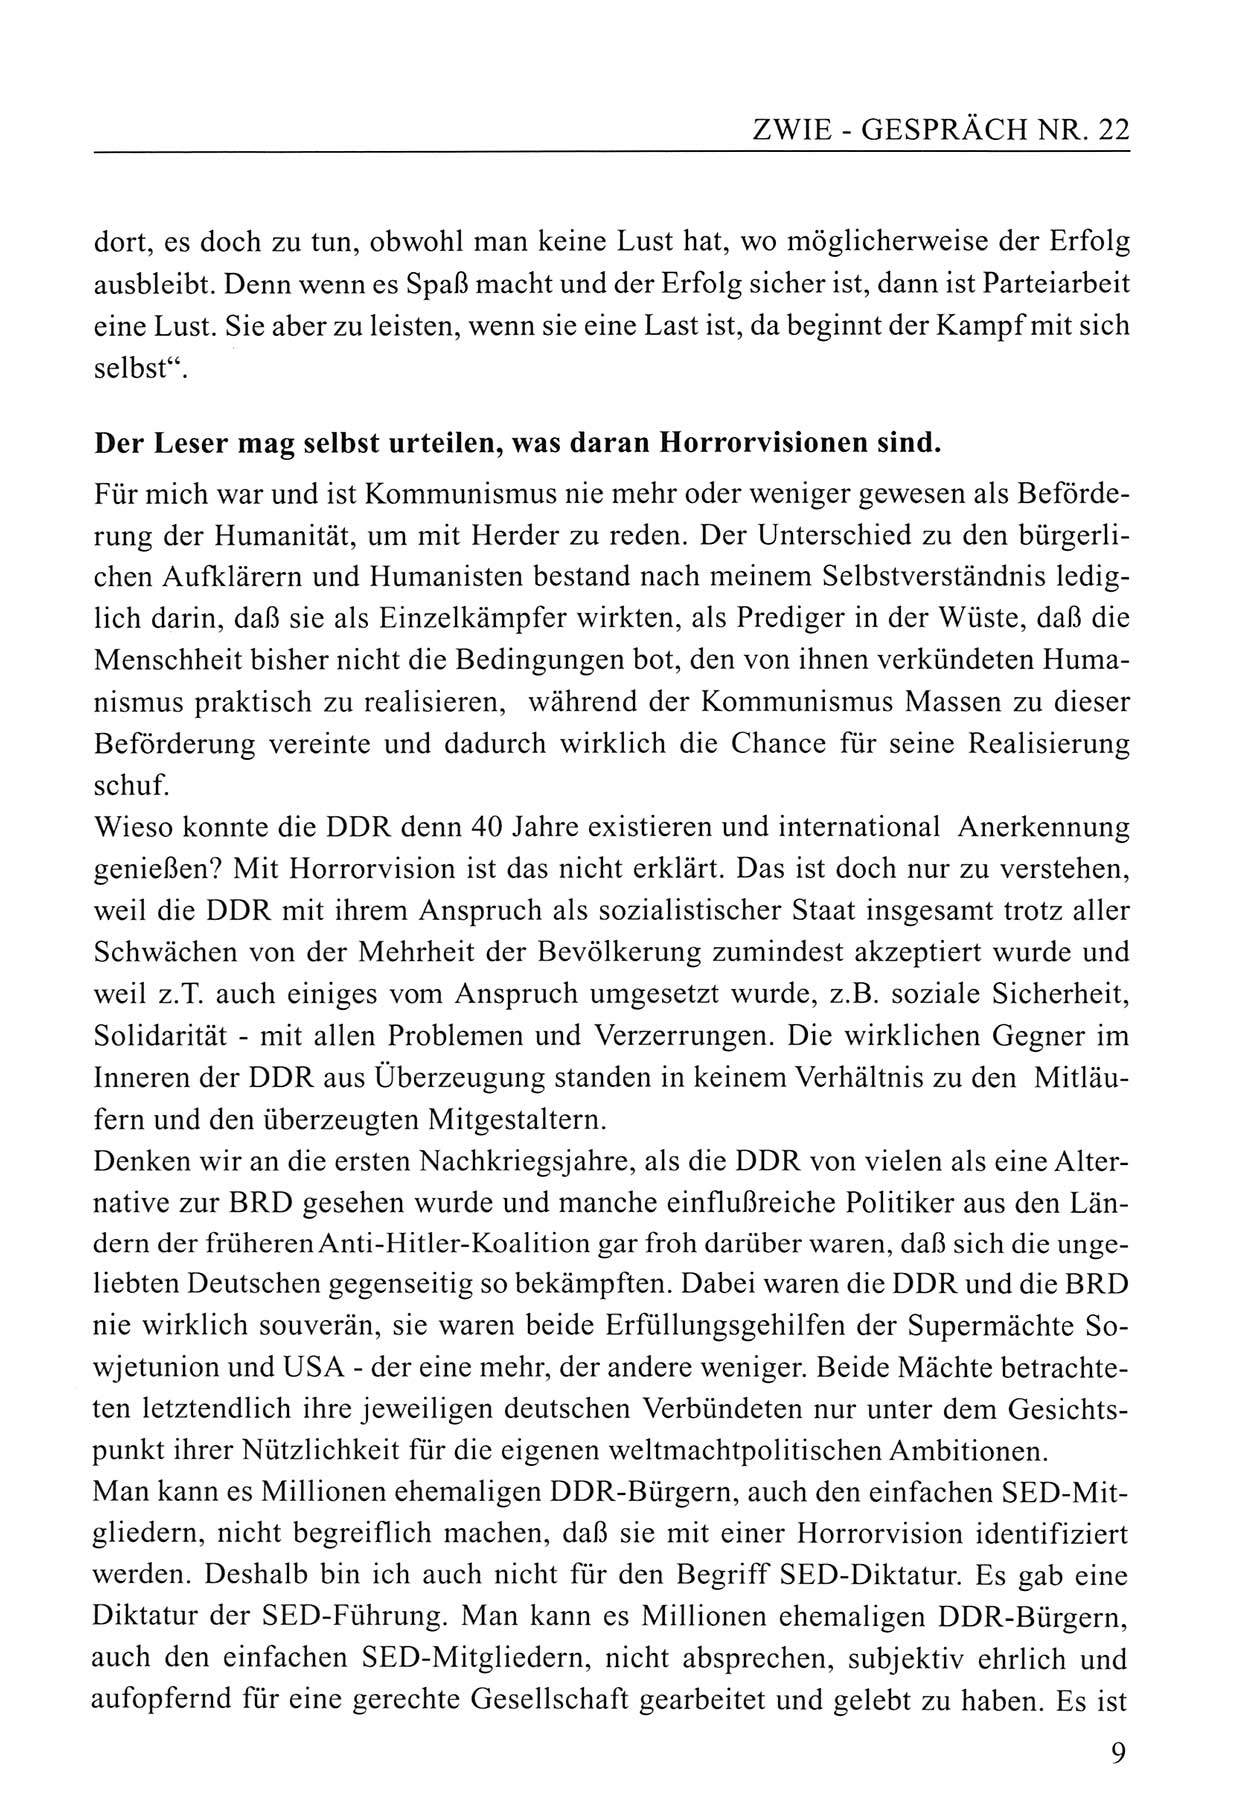 Zwie-Gespräch, Beiträge zum Umgang mit der Staatssicherheits-Vergangenheit [Deutsche Demokratische Republik (DDR)], Ausgabe Nr. 22, Berlin 1994, Seite 9 (Zwie-Gespr. Ausg. 22 1994, S. 9)